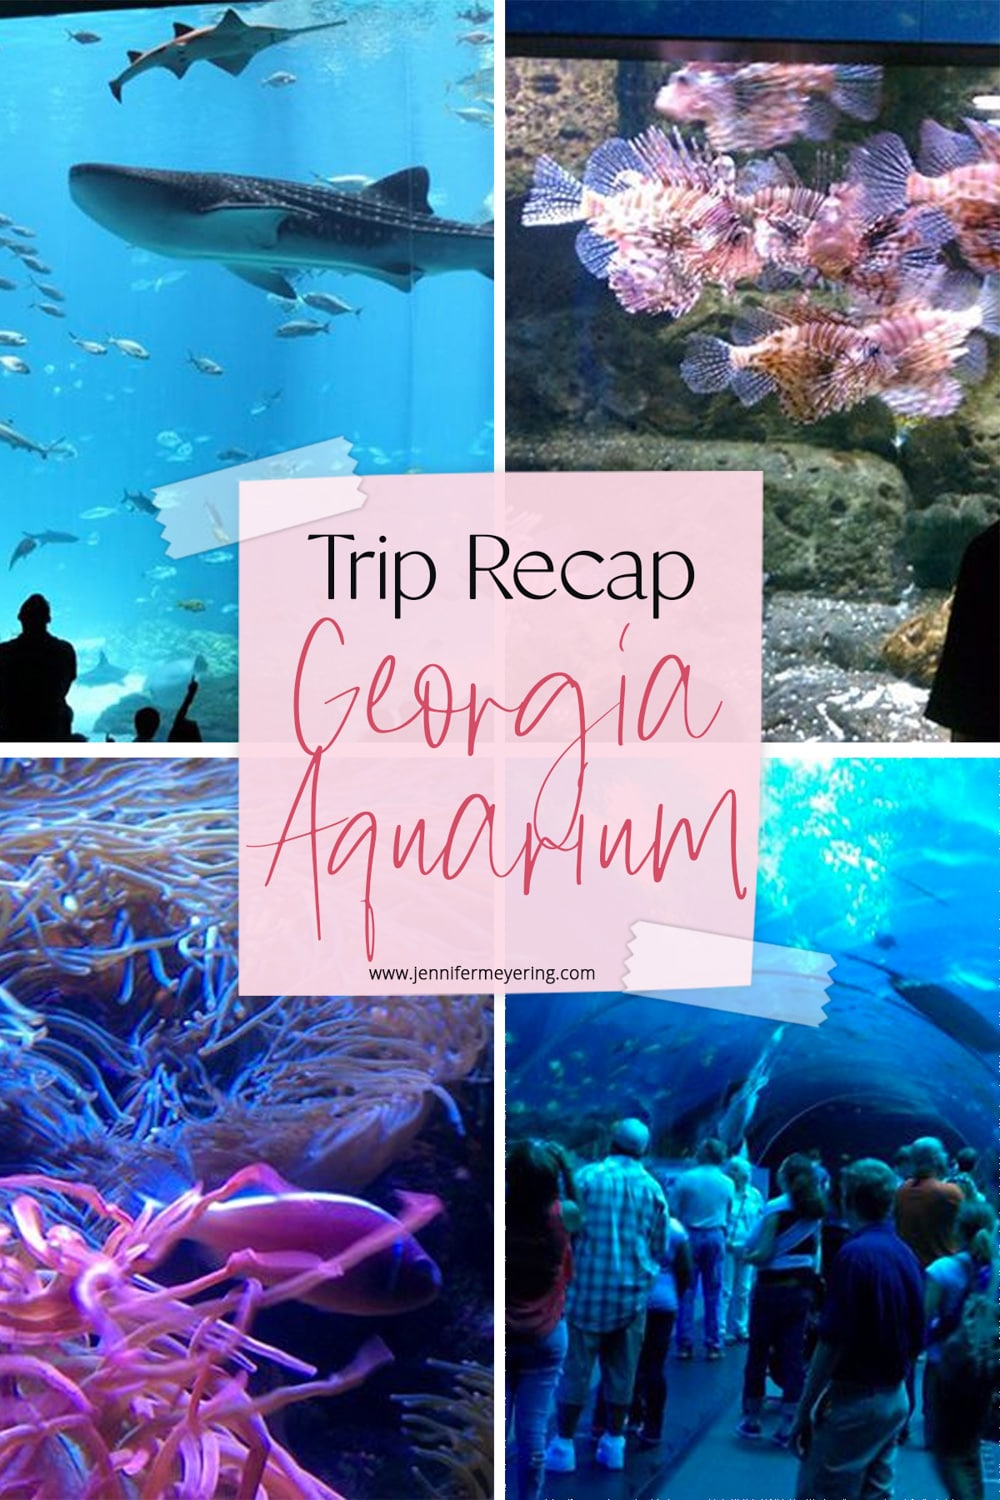 Trip Recap: The Georgia Aquarium